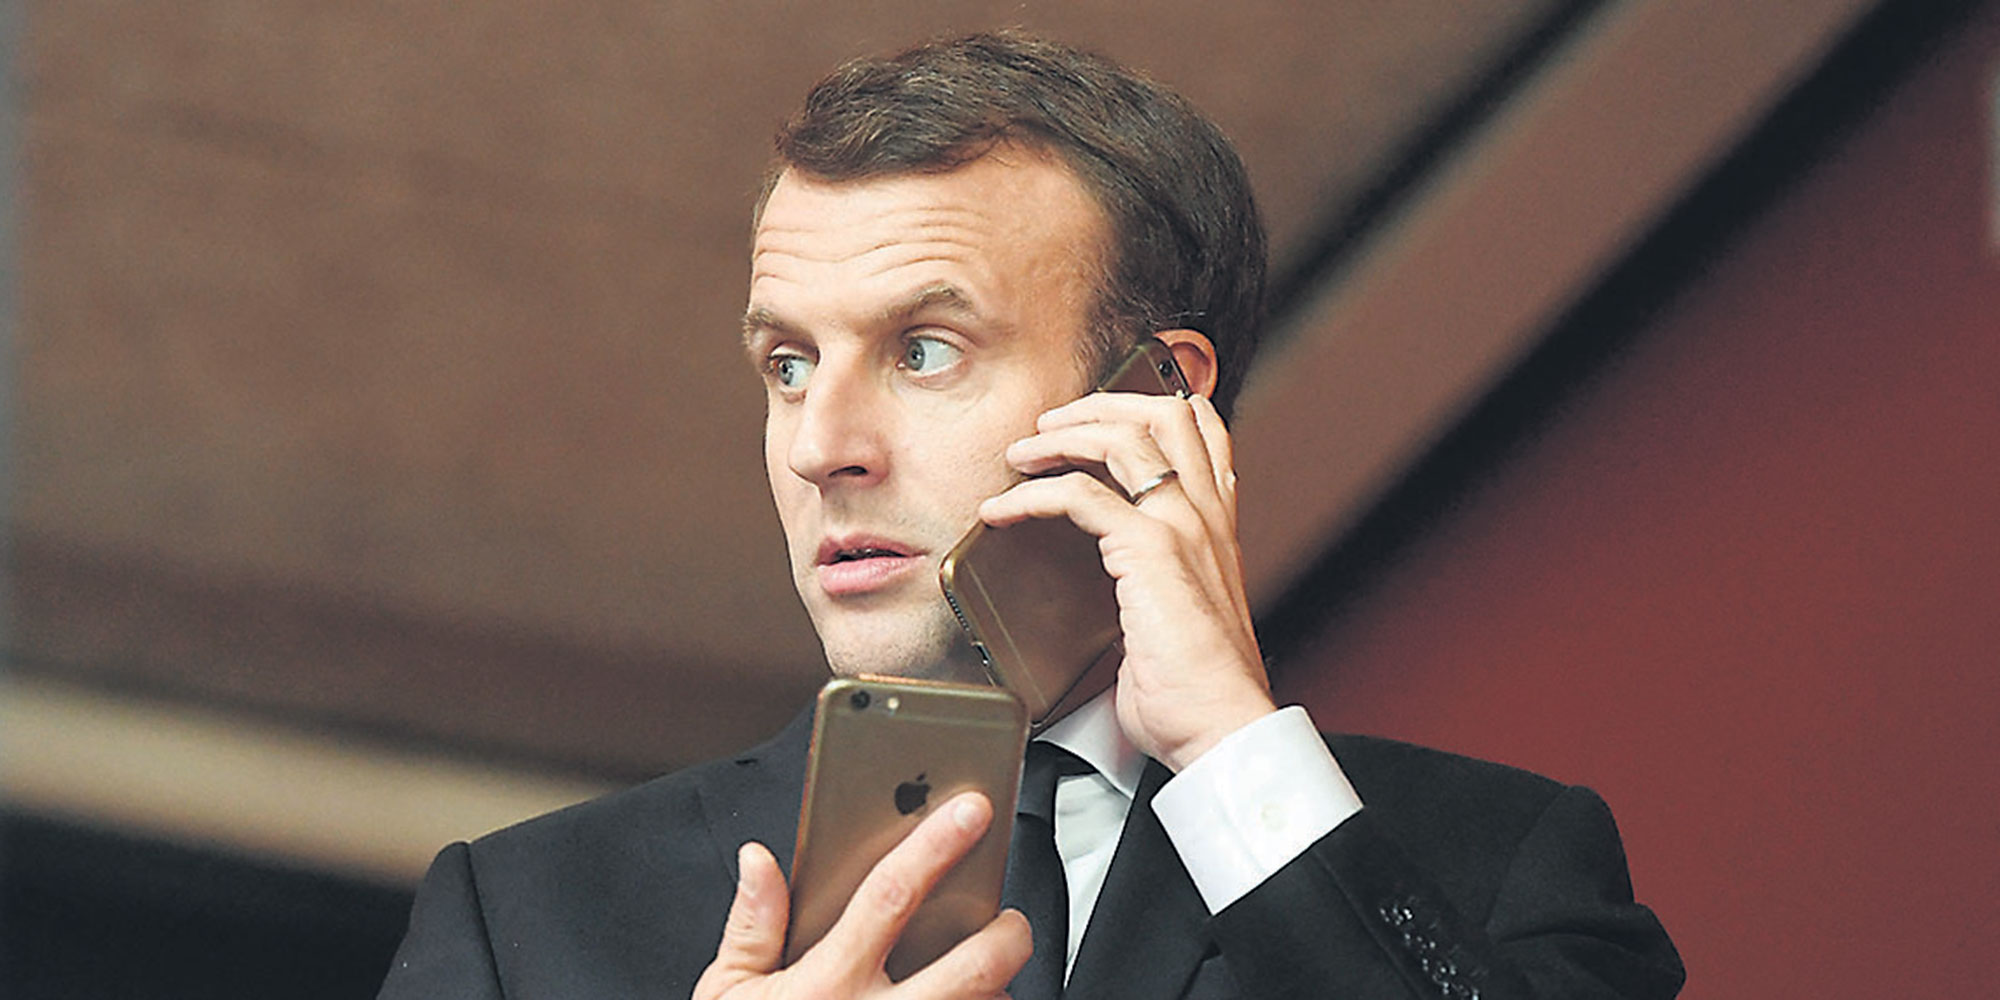 France : Macron vient de recruter un redoutable lobbyiste des médias, expert en manipulation de l’opinion publique